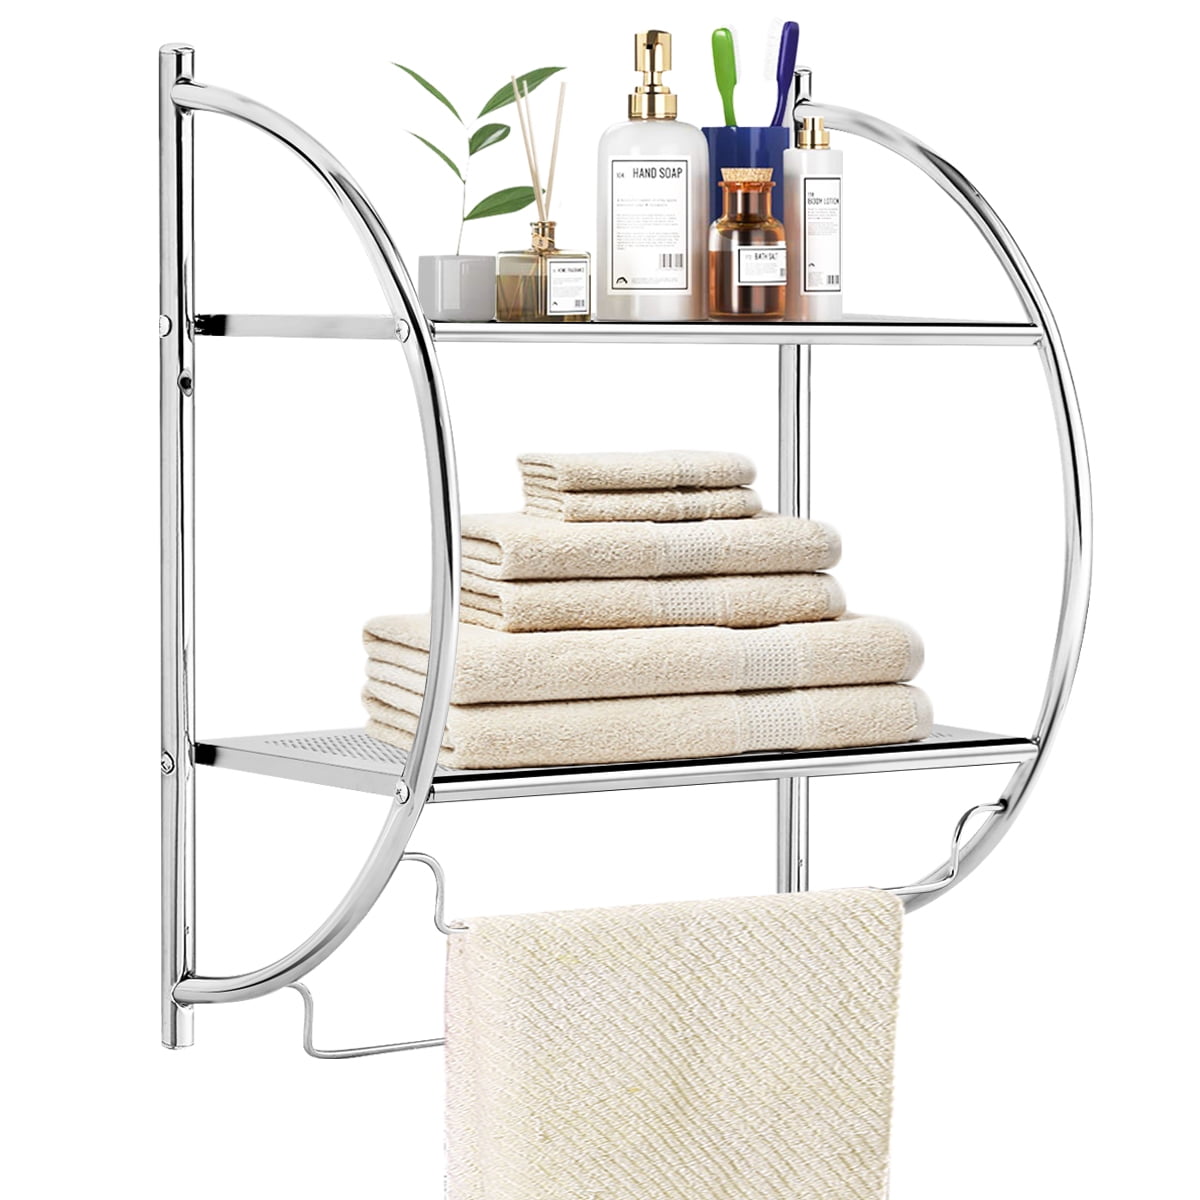 Bathroom Stainless Steel Towel Rail Rack Holder 2 Swivel Bar Wall Hanger Shelf 